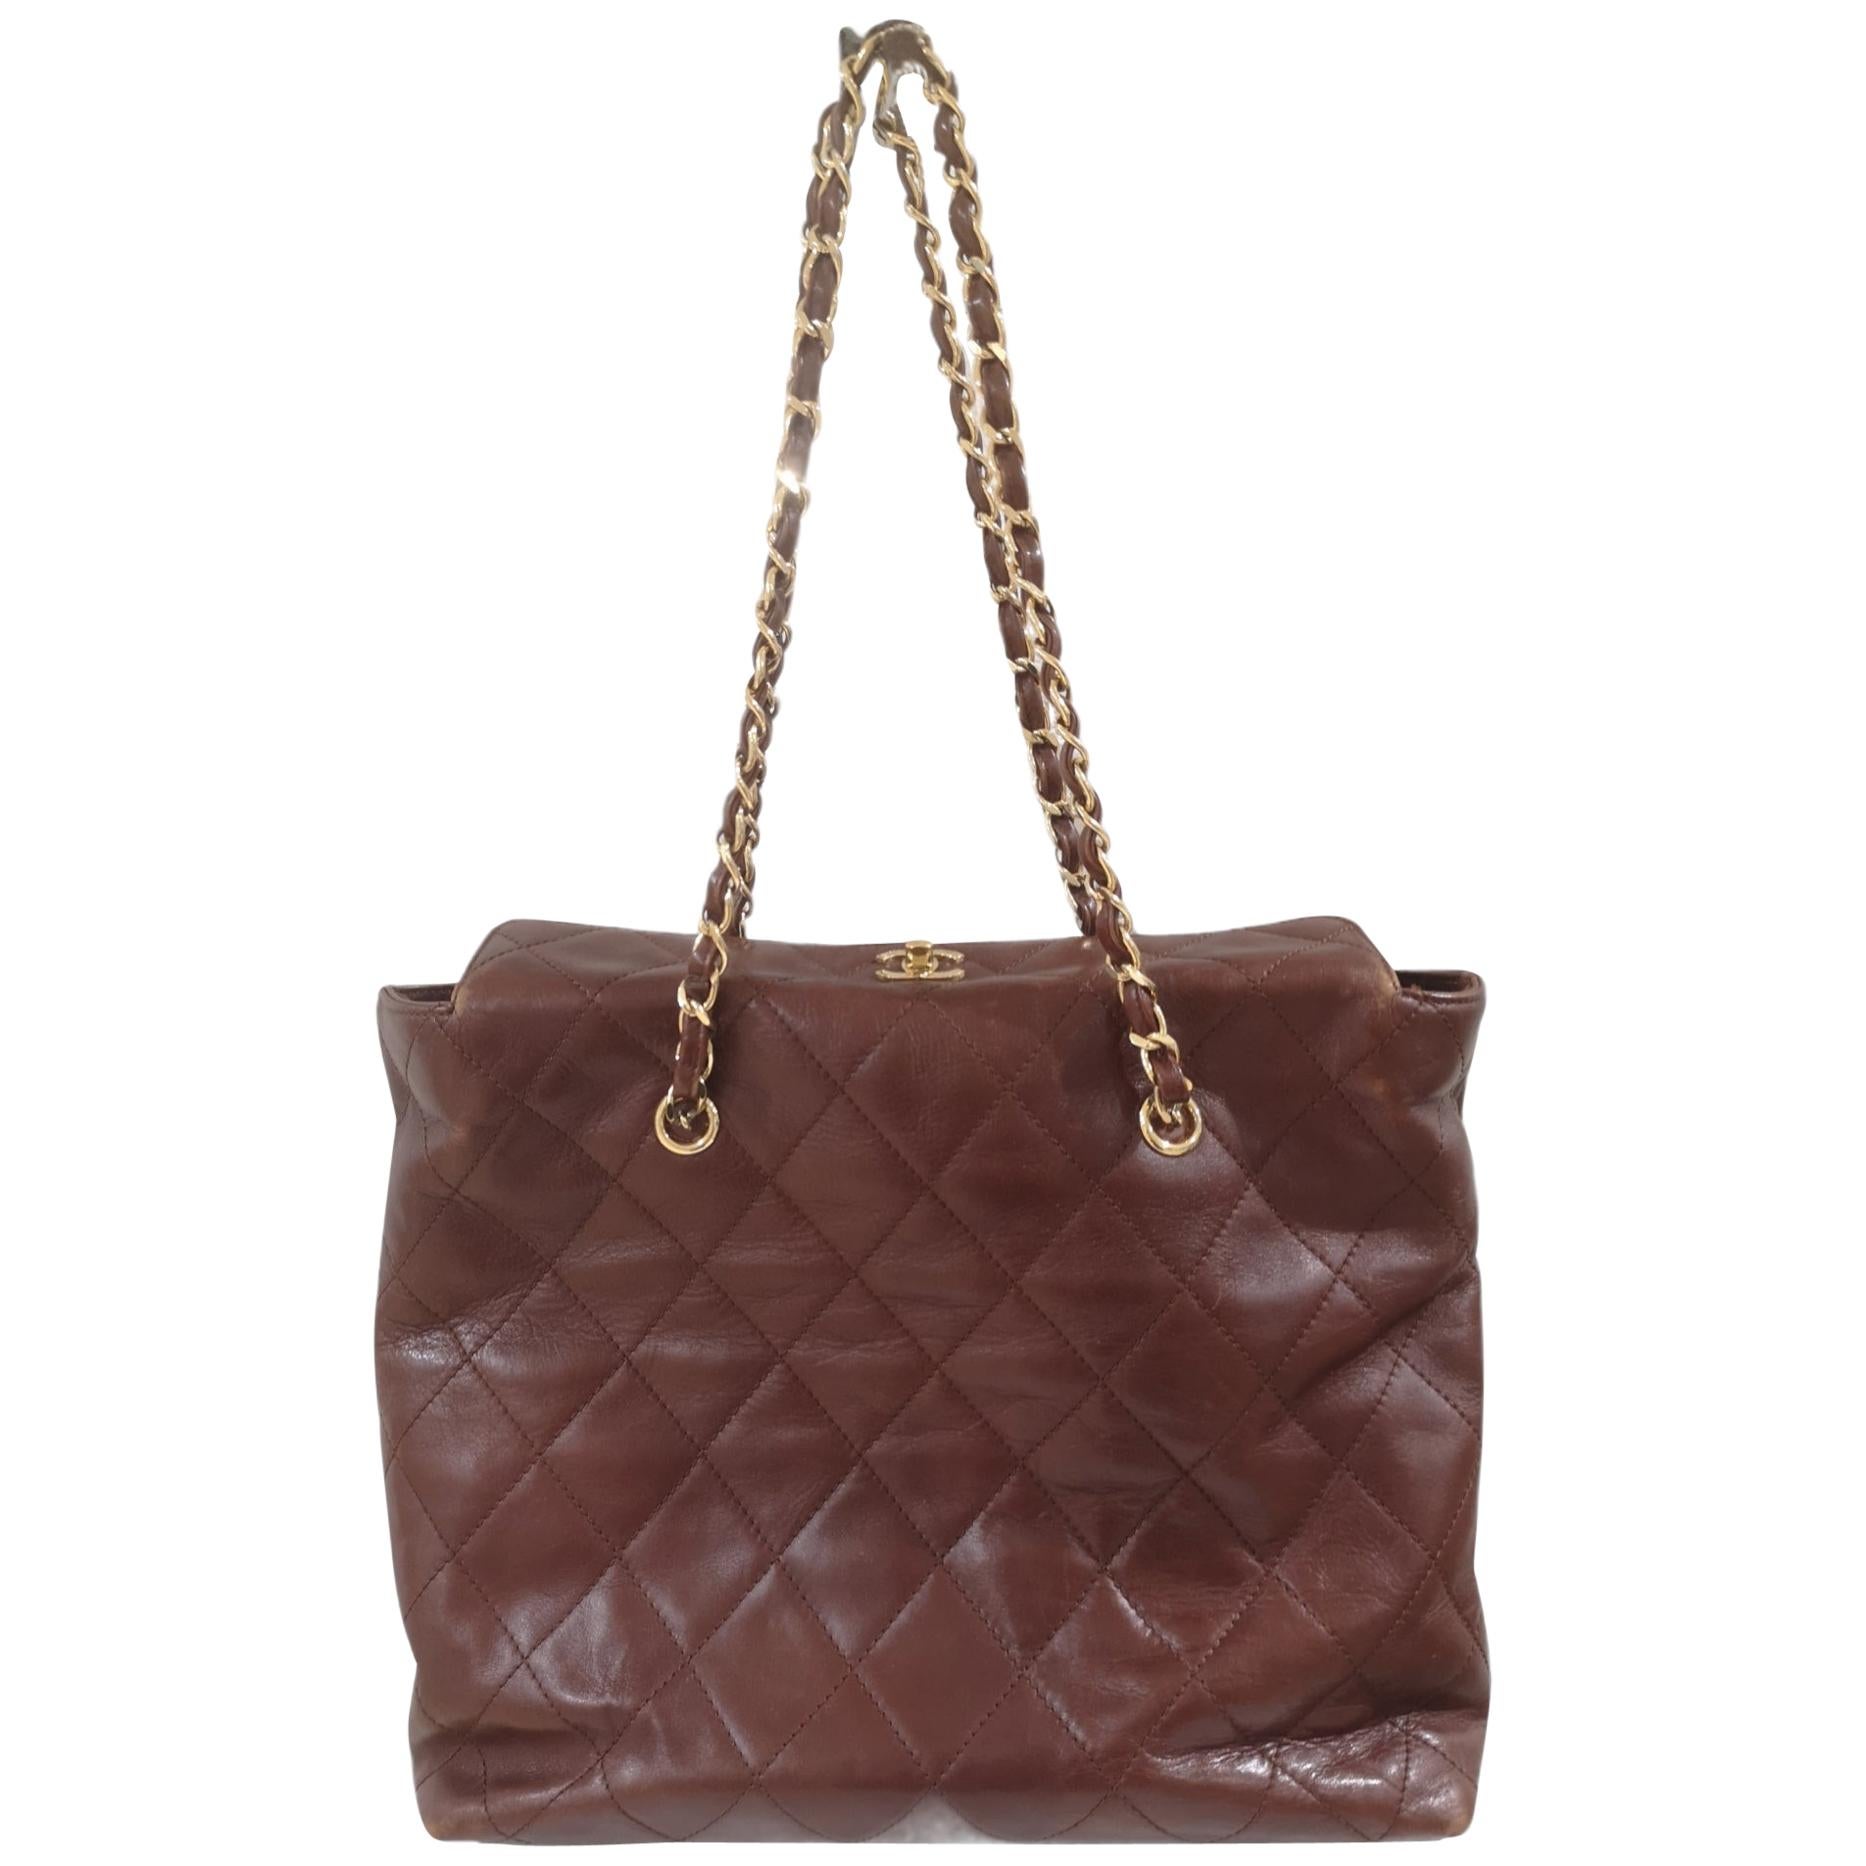 Chanel brown leather gold hardware shoulder bag